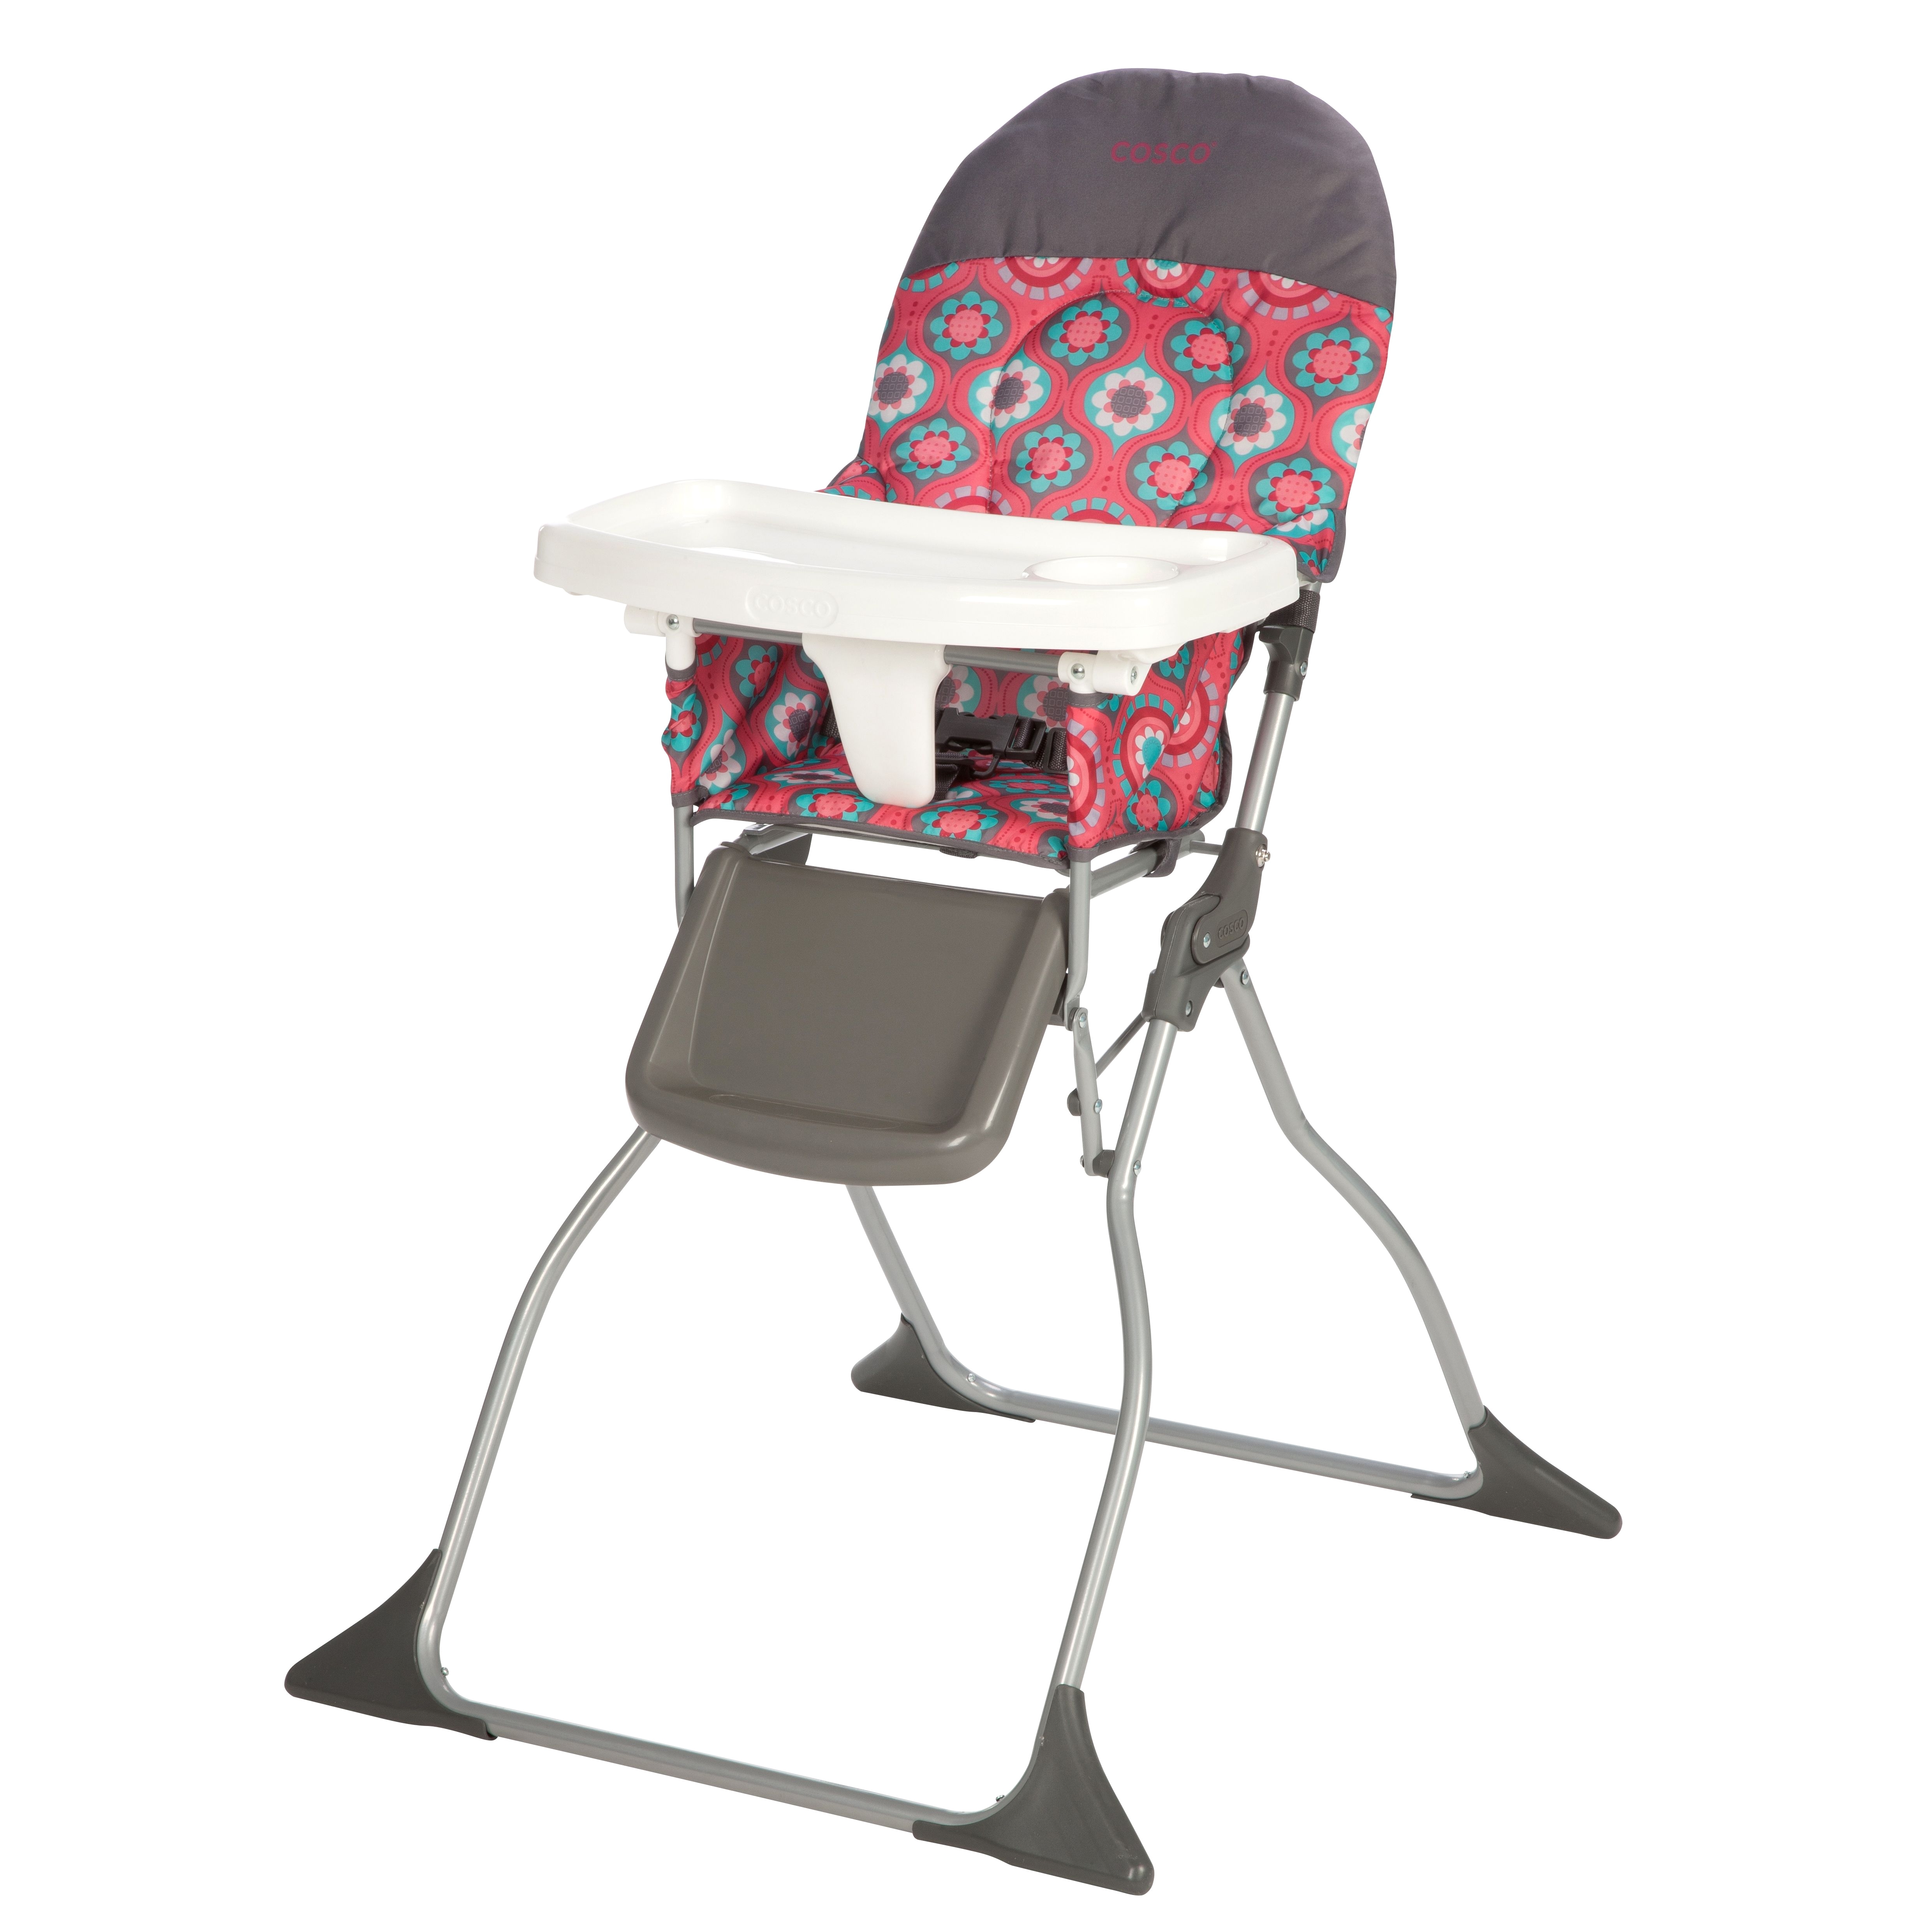 Oxo tot Seedling High Chair Replacement Cushion Best Flat Folding High Chair Http Jeremyeatonart Com Pinterest